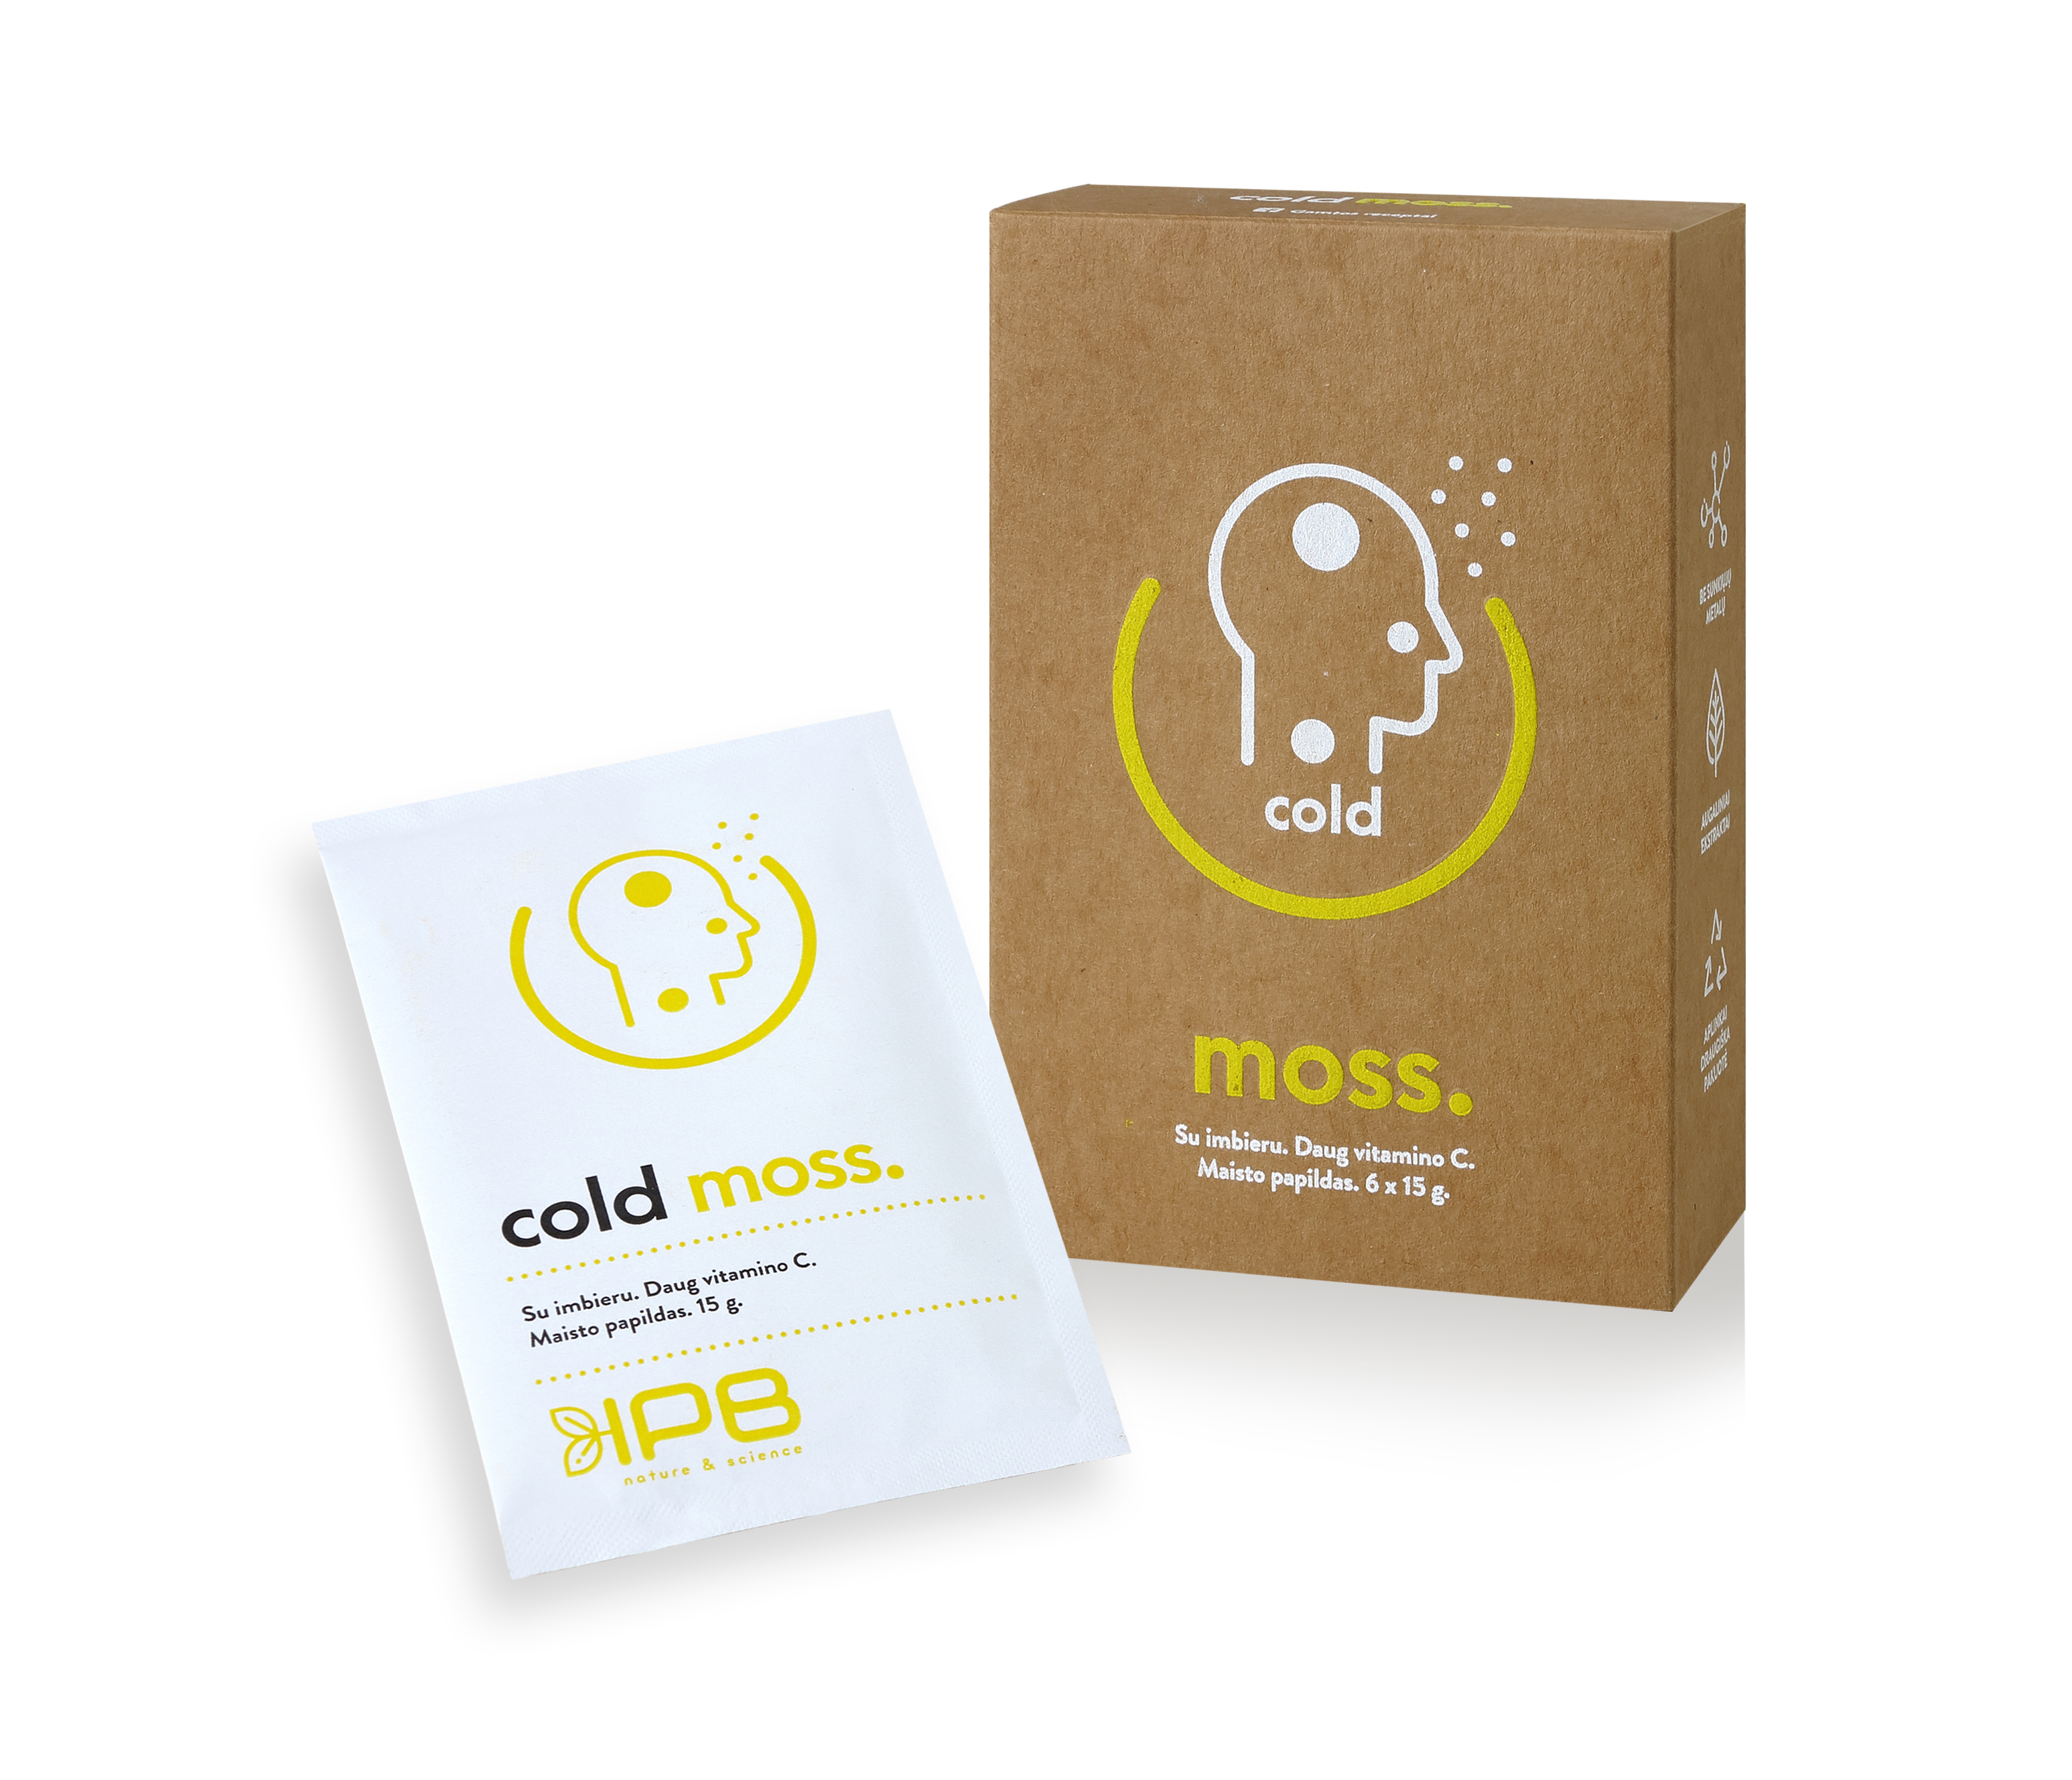 ქოლდ მოსი / Cold moss